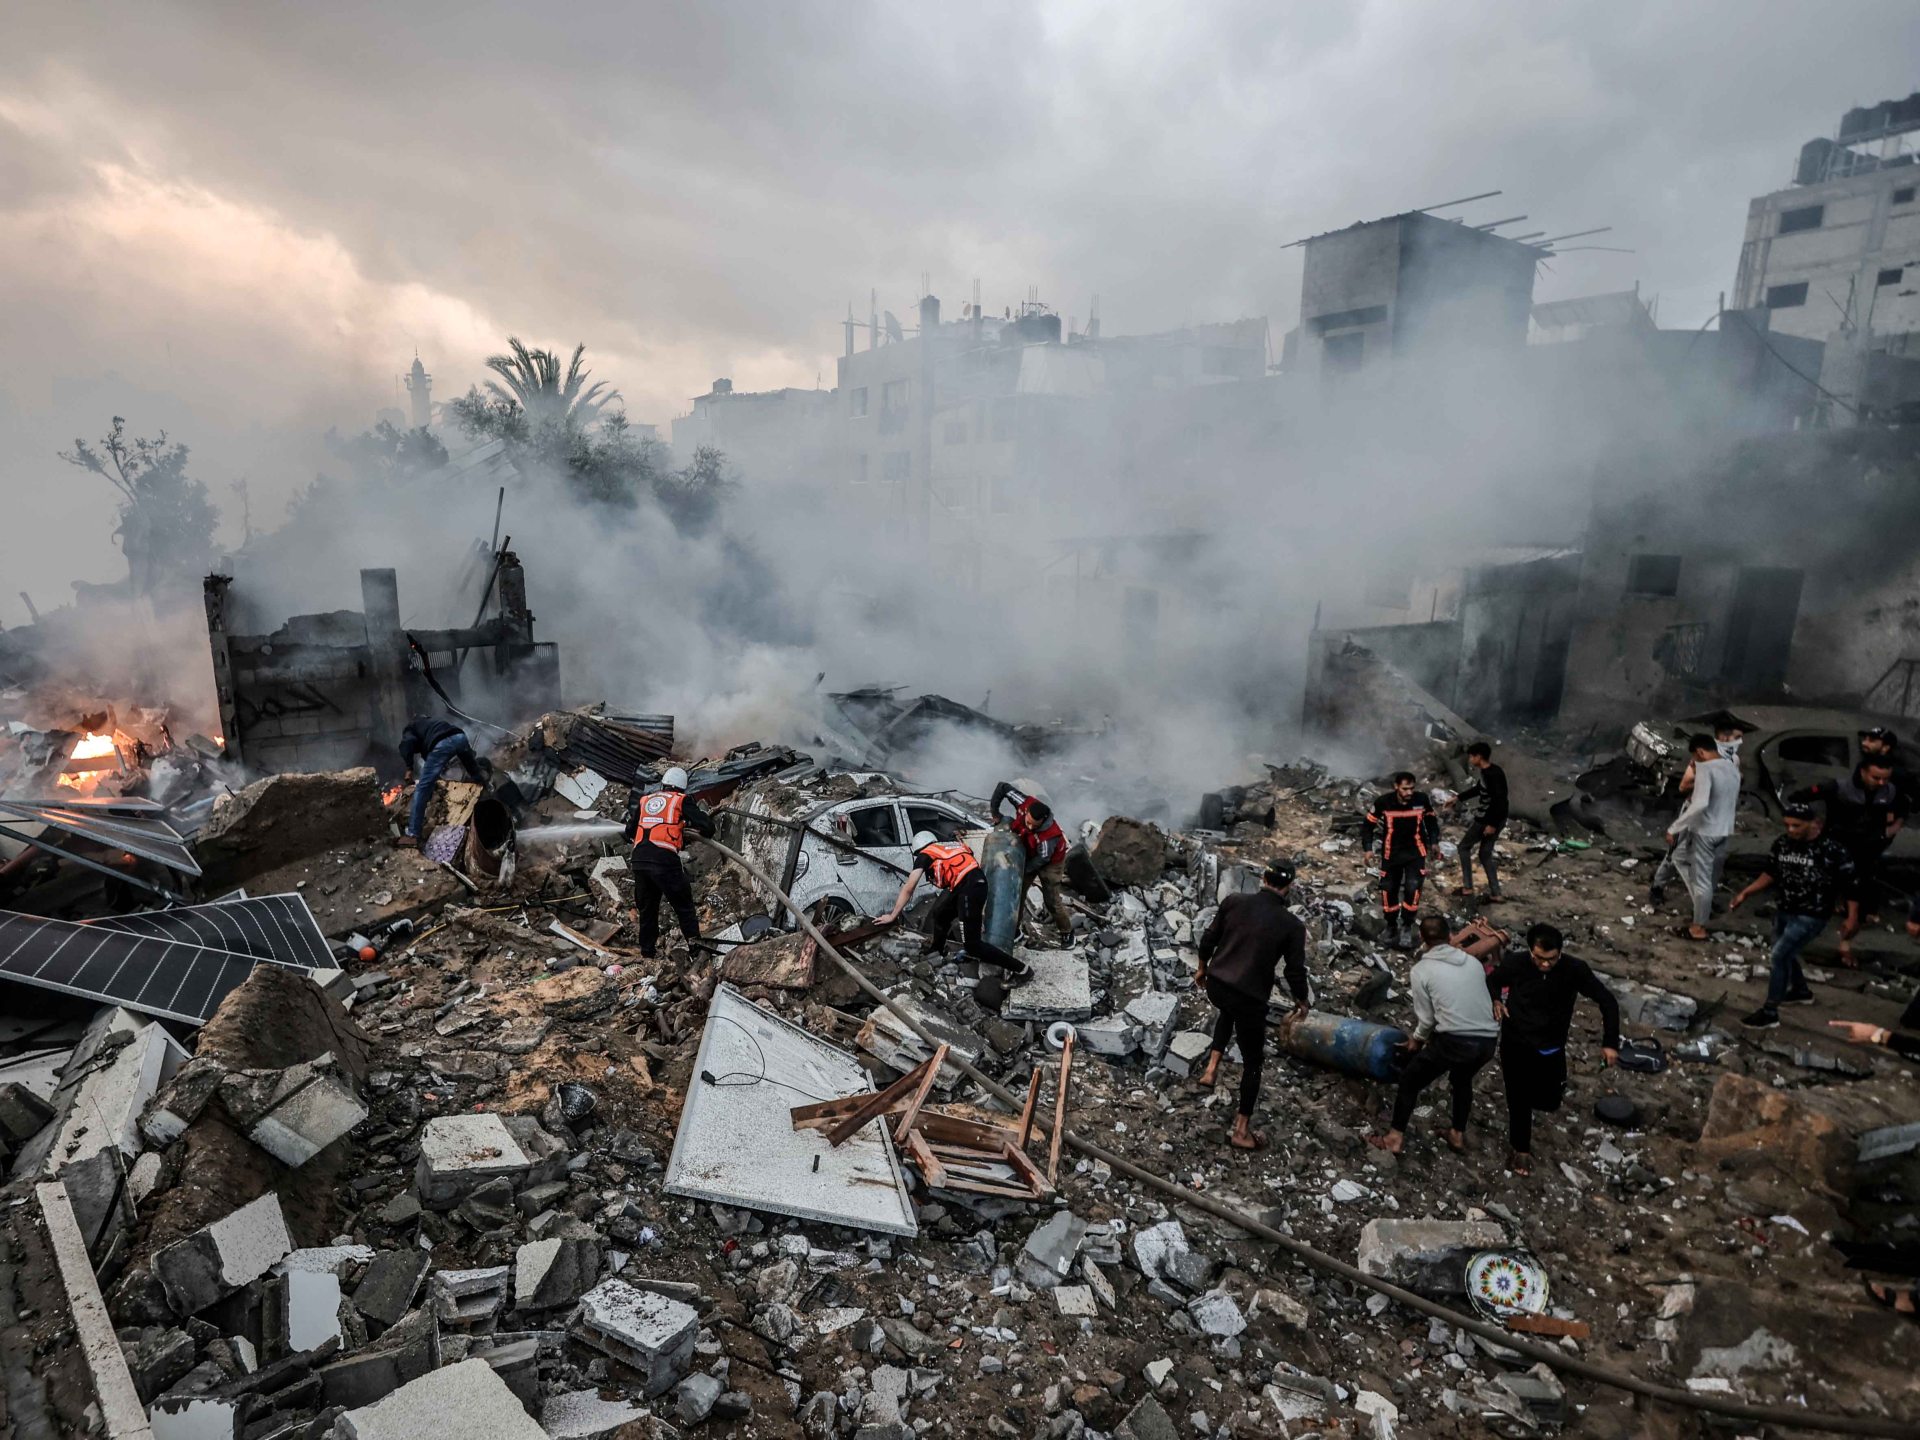 استشهاد 41 شخصا من عائلة واحدة في غزة | أخبار – البوكس نيوز